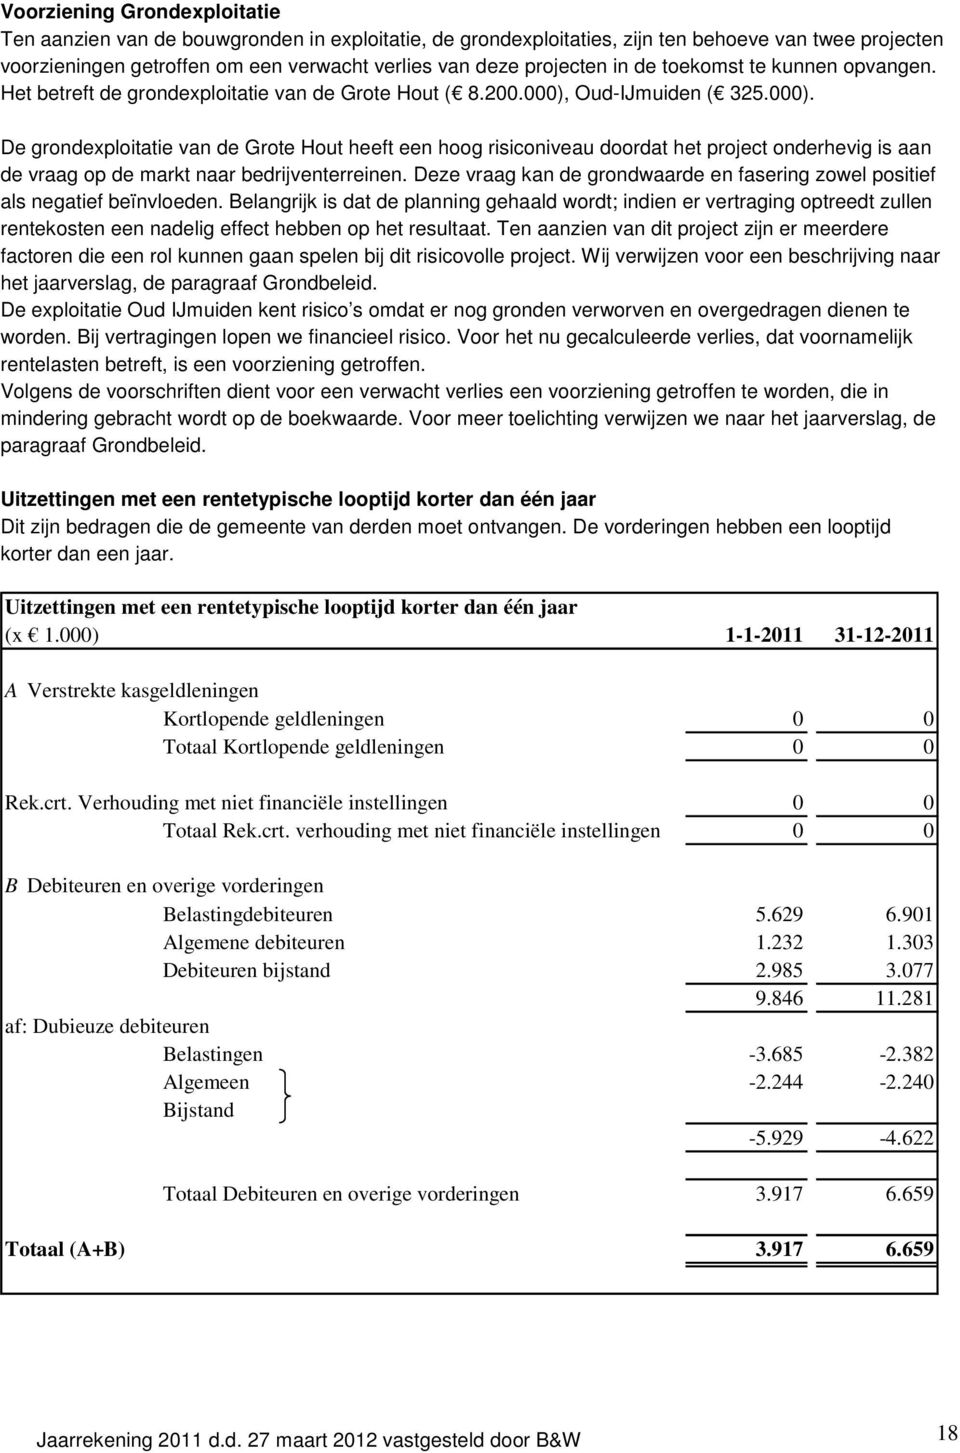 Oud-IJmuiden ( 325.000). De grondexploitatie van de Grote Hout heeft een hoog risiconiveau doordat het project onderhevig is aan de vraag op de markt naar bedrijventerreinen.